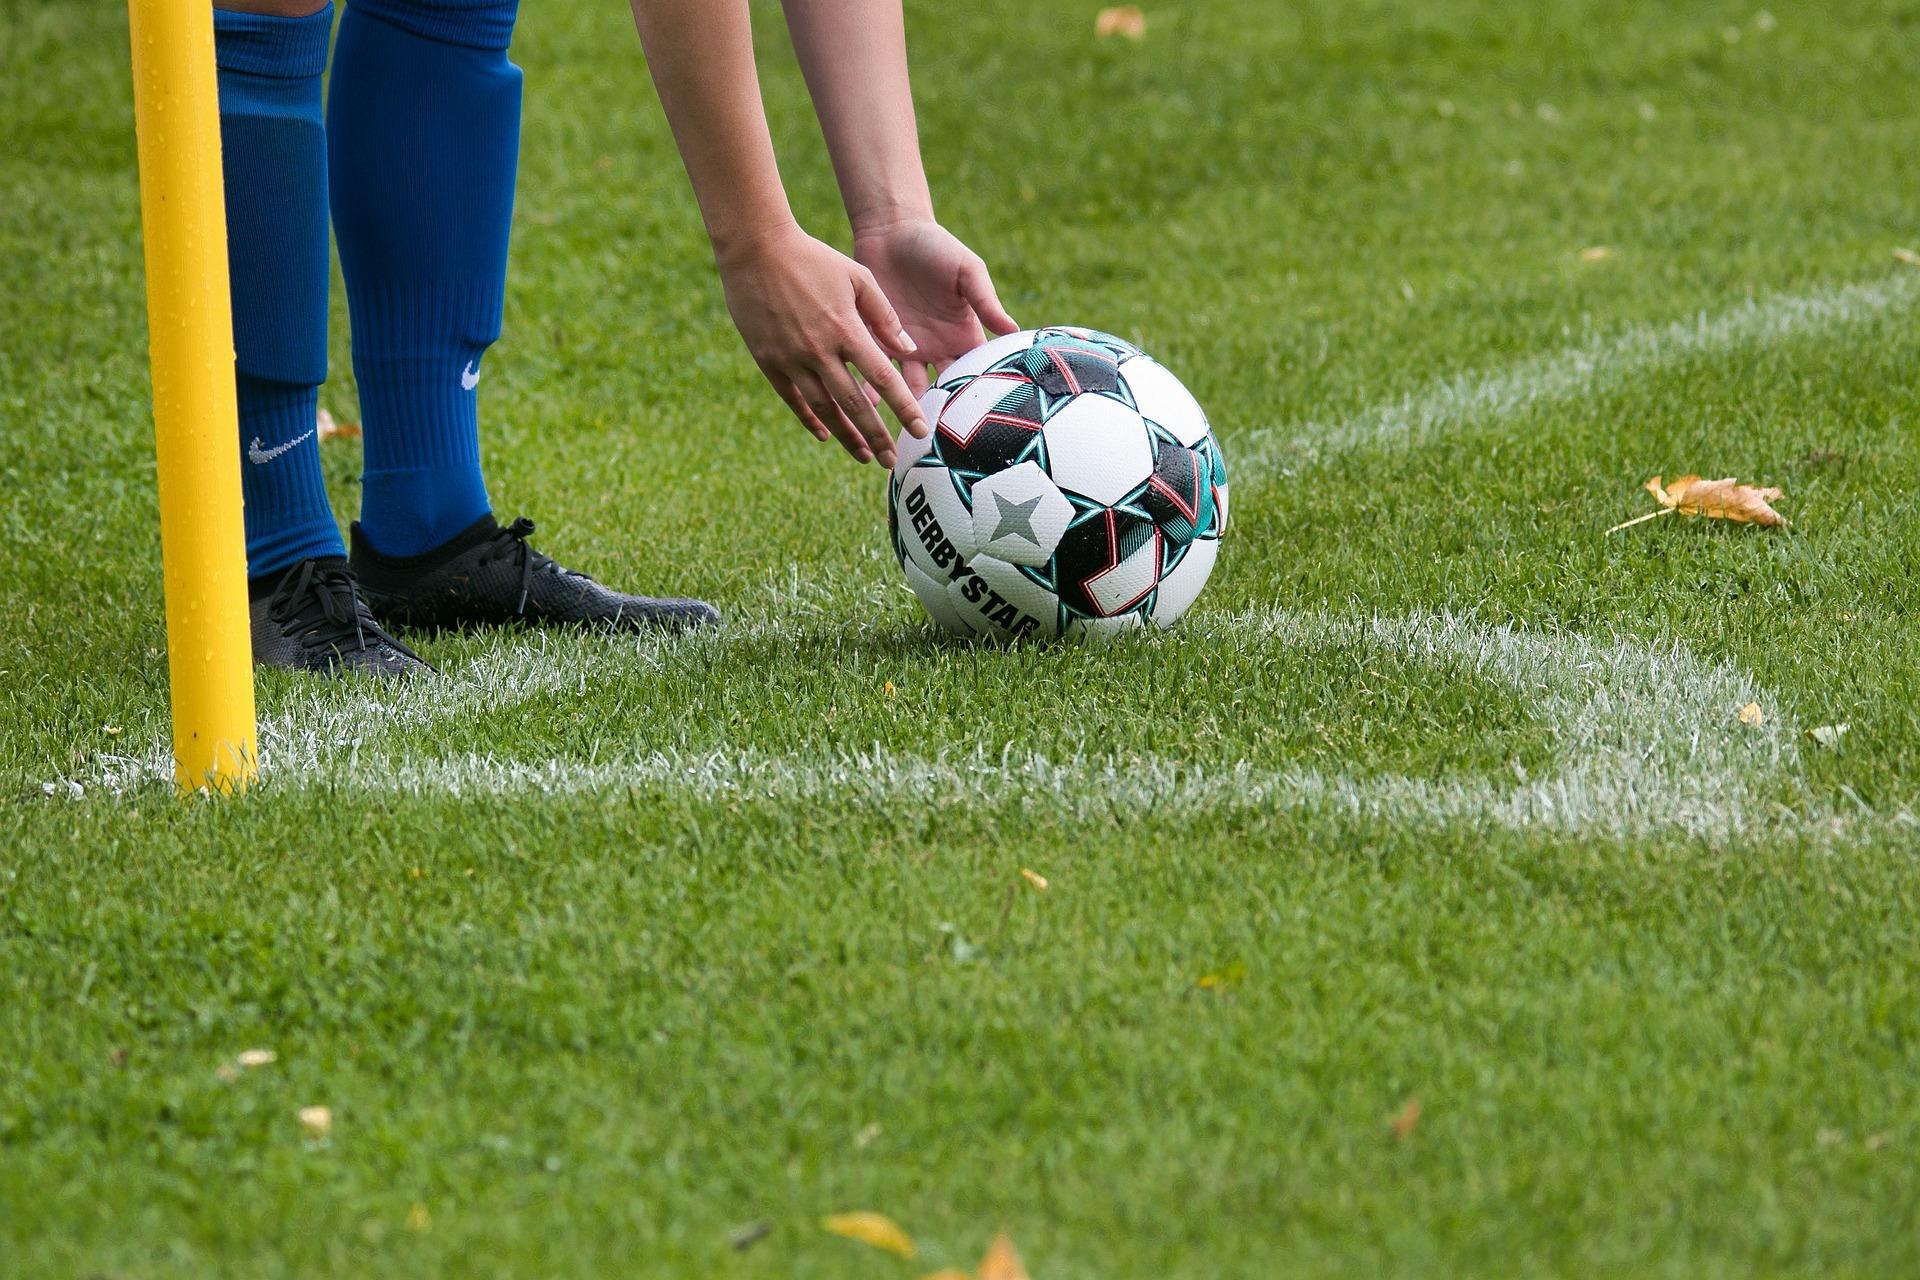 Hoek van een voetbalveld. In beeld zwarte voetbalschoenen en blauwe sokken en handen die een bal neerleggen.